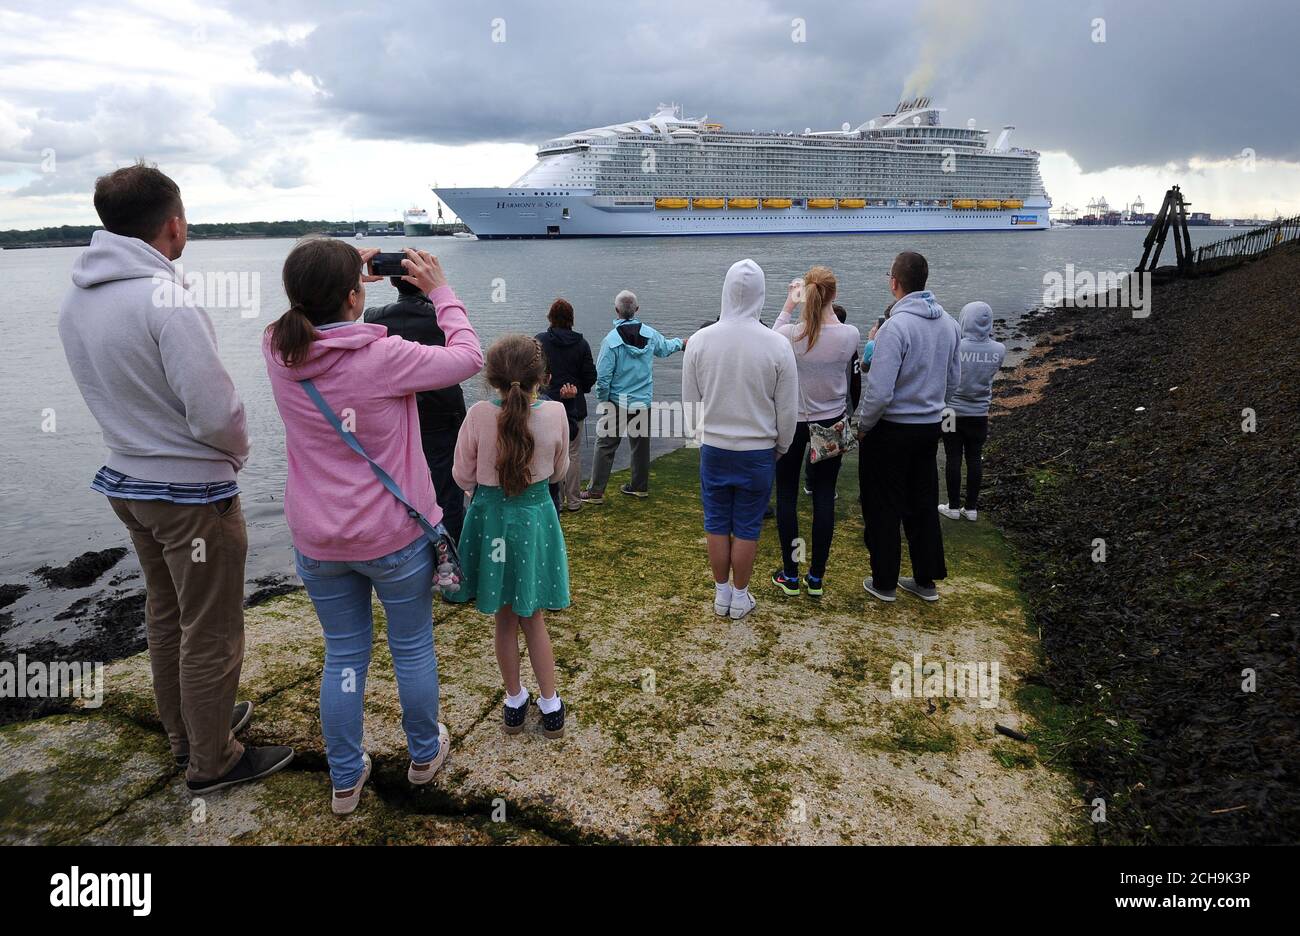 Mitglieder der Öffentlichkeit versammeln sich im Mayflower Park, um das größte Passagierschiff der Welt, MS Harmony of the Seas, im Besitz von Royal Caribbean, zu sehen, das Southampton verlässt. Stockfoto